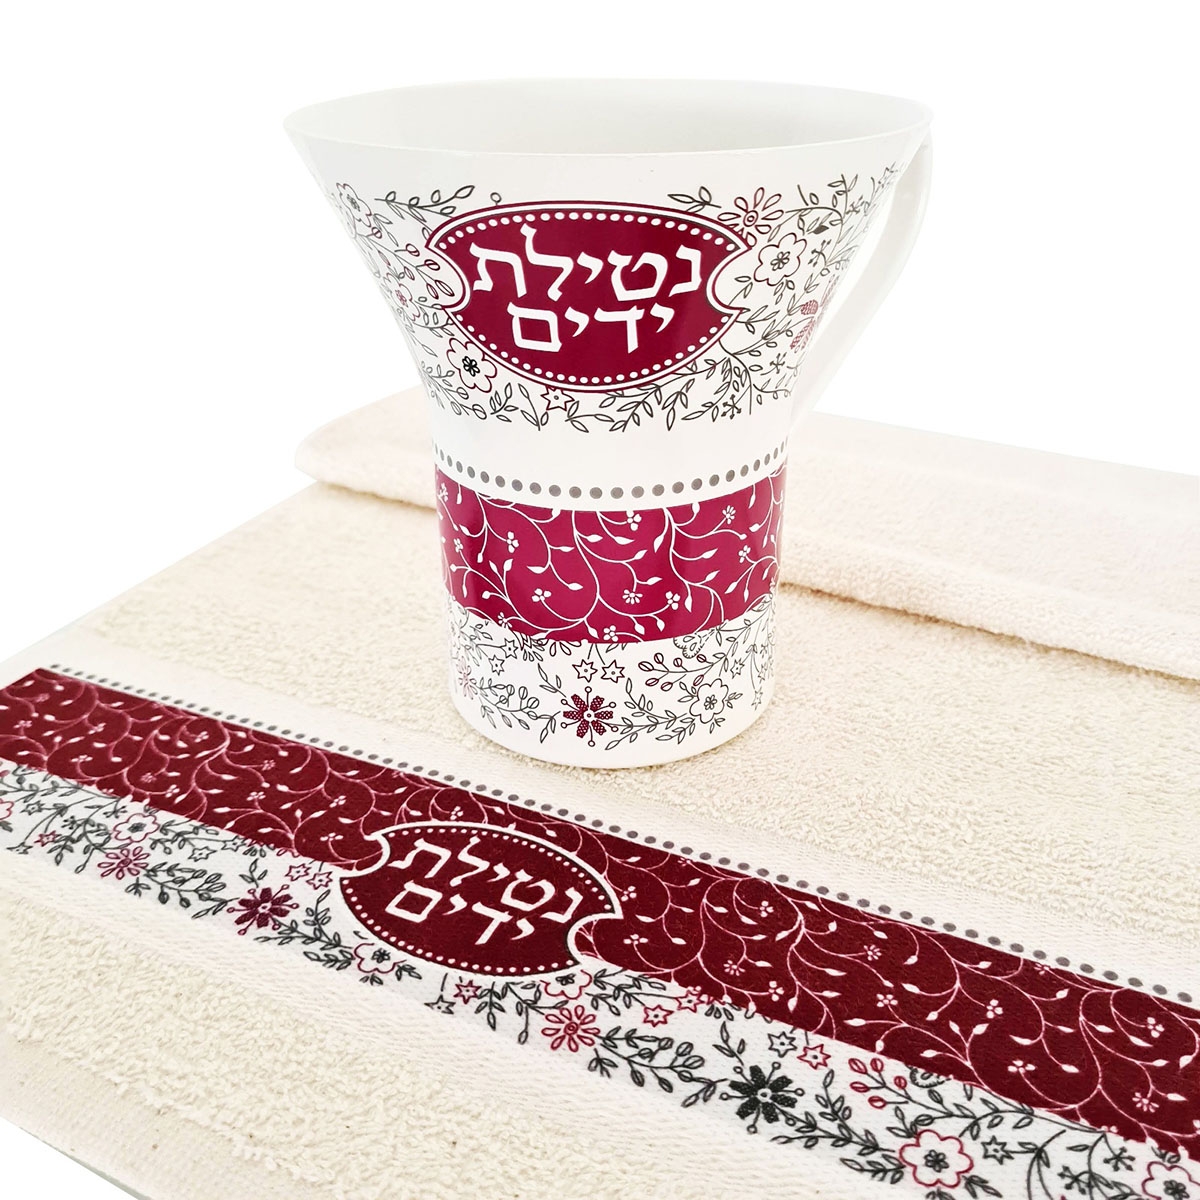 Dorit Judaica Netilat Yadayim Handwashing Set – Red Floral Design - 1